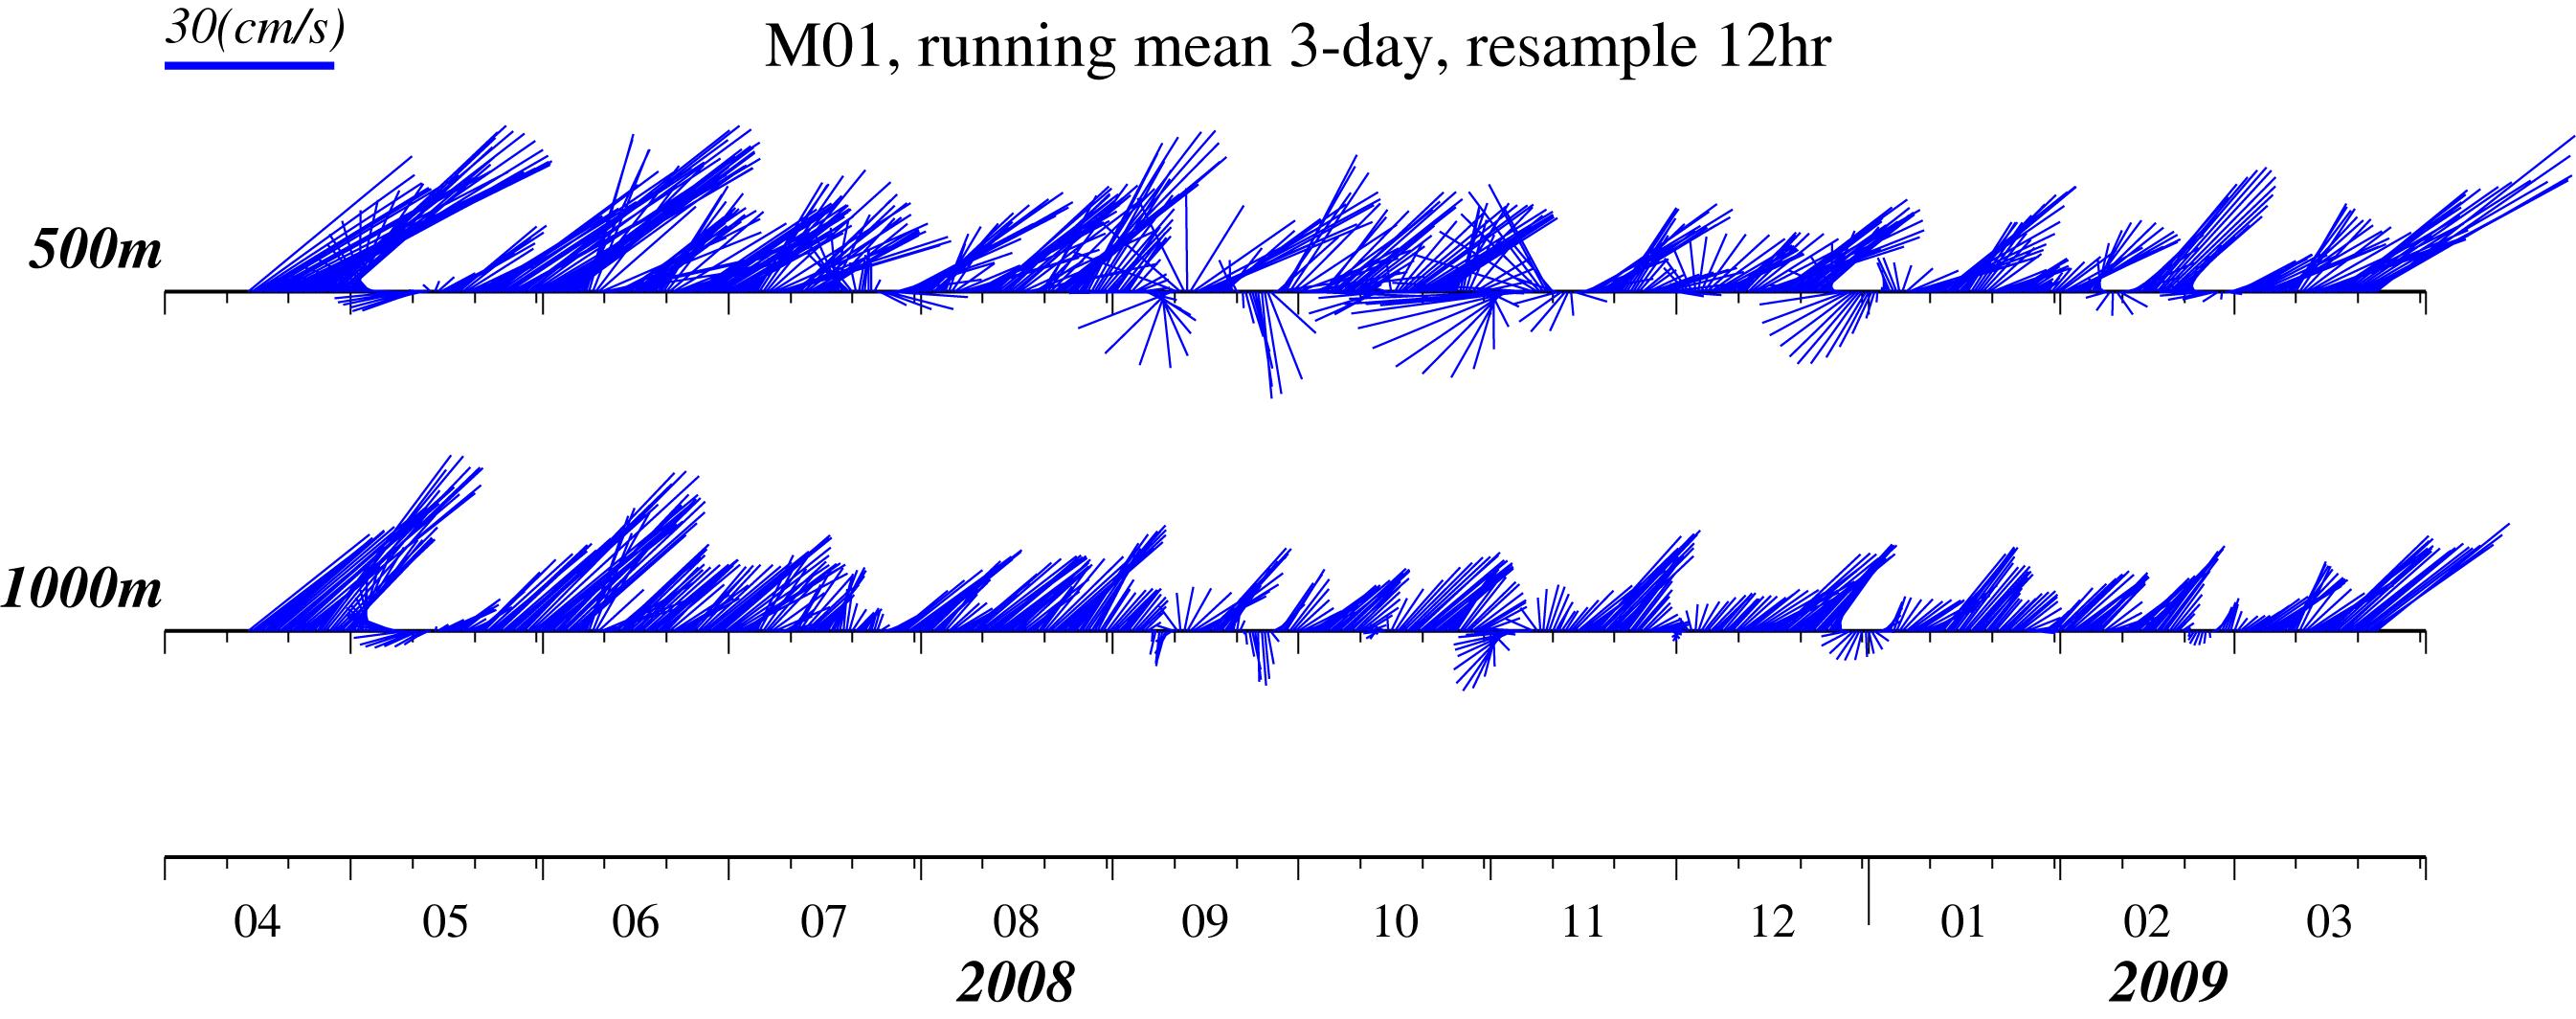 St. M01에서 관측한 수심별 시계열 유속 벡터.